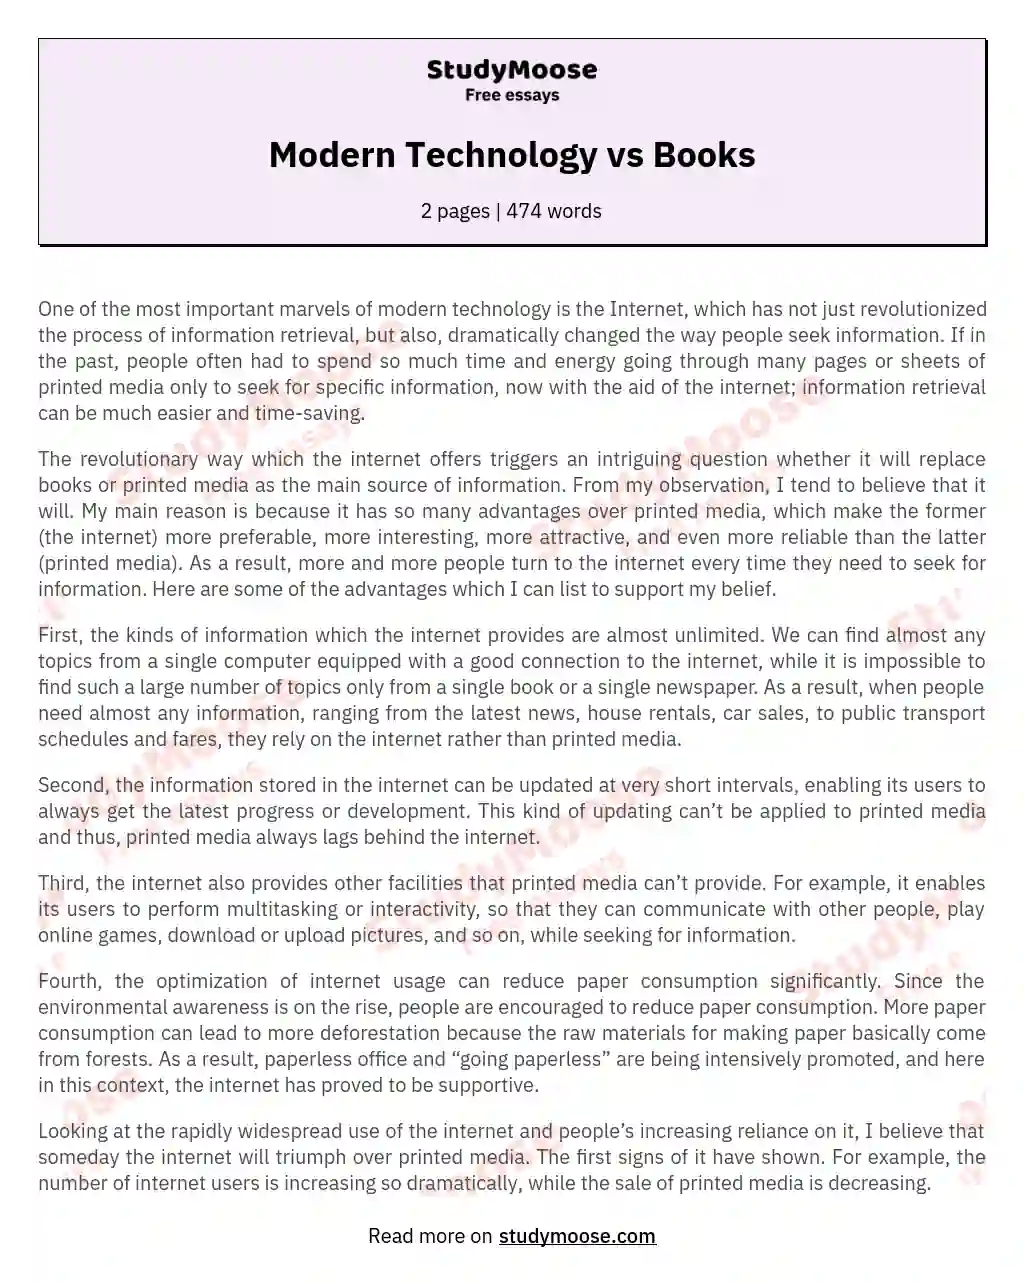 Modern Technology vs Books essay